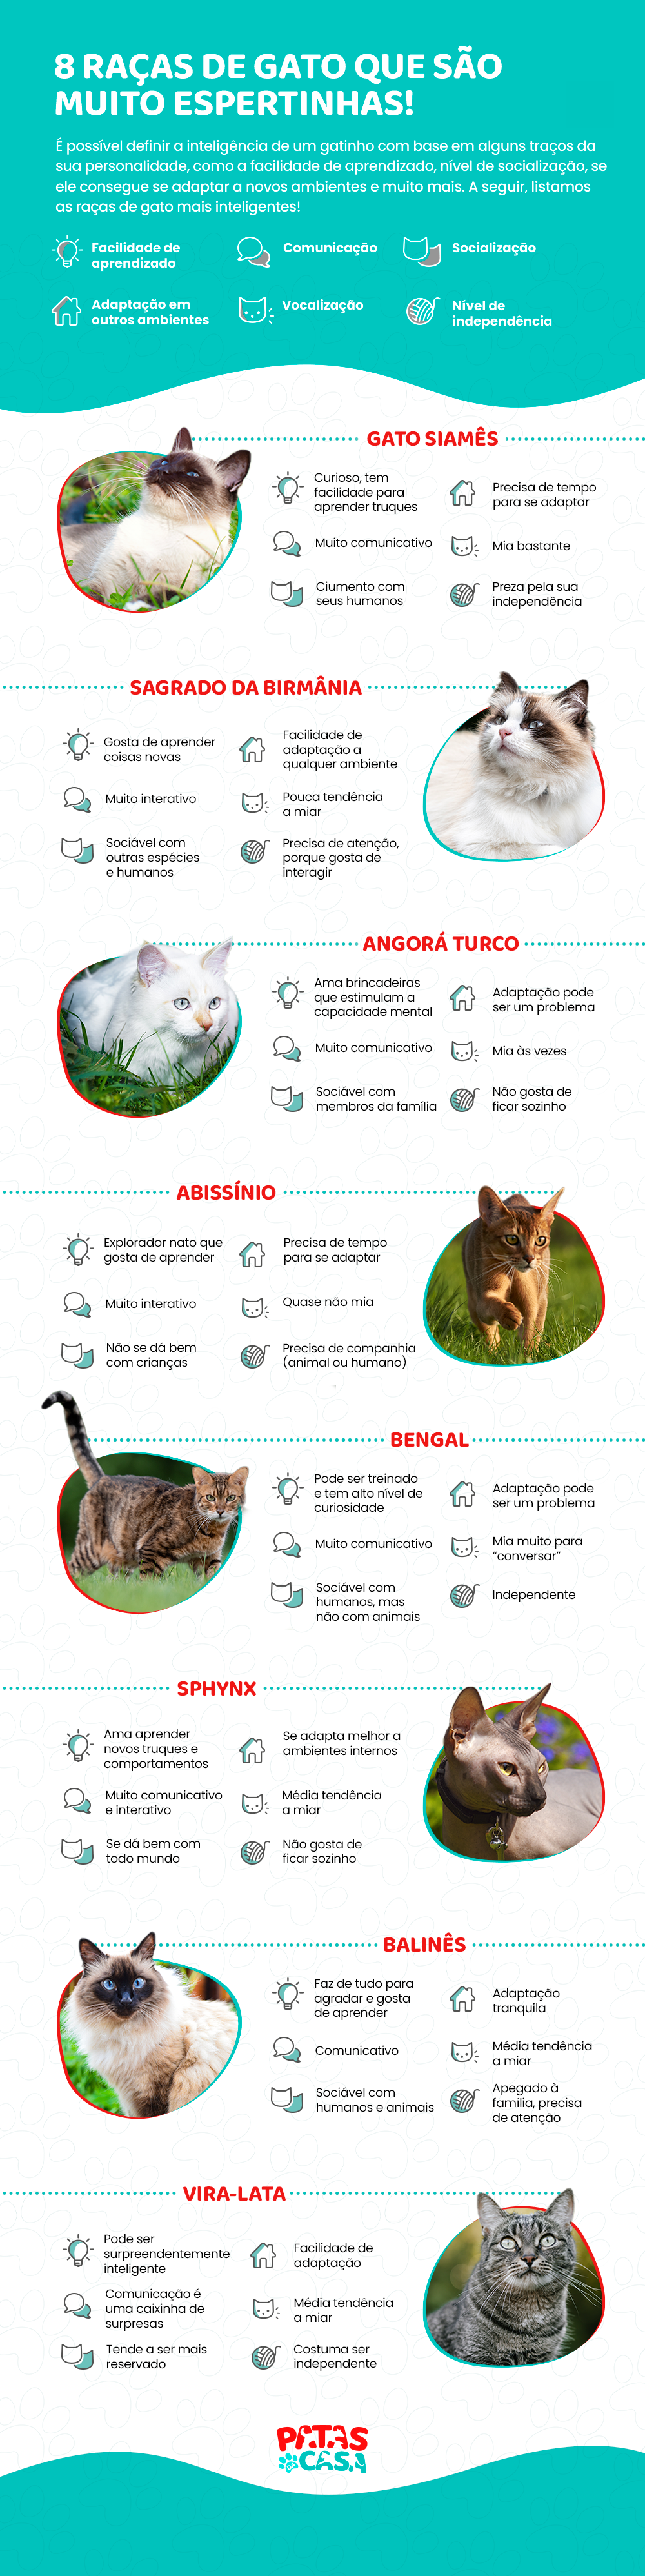 Infográfico mostrando 8 raças de gato mais inteligentes